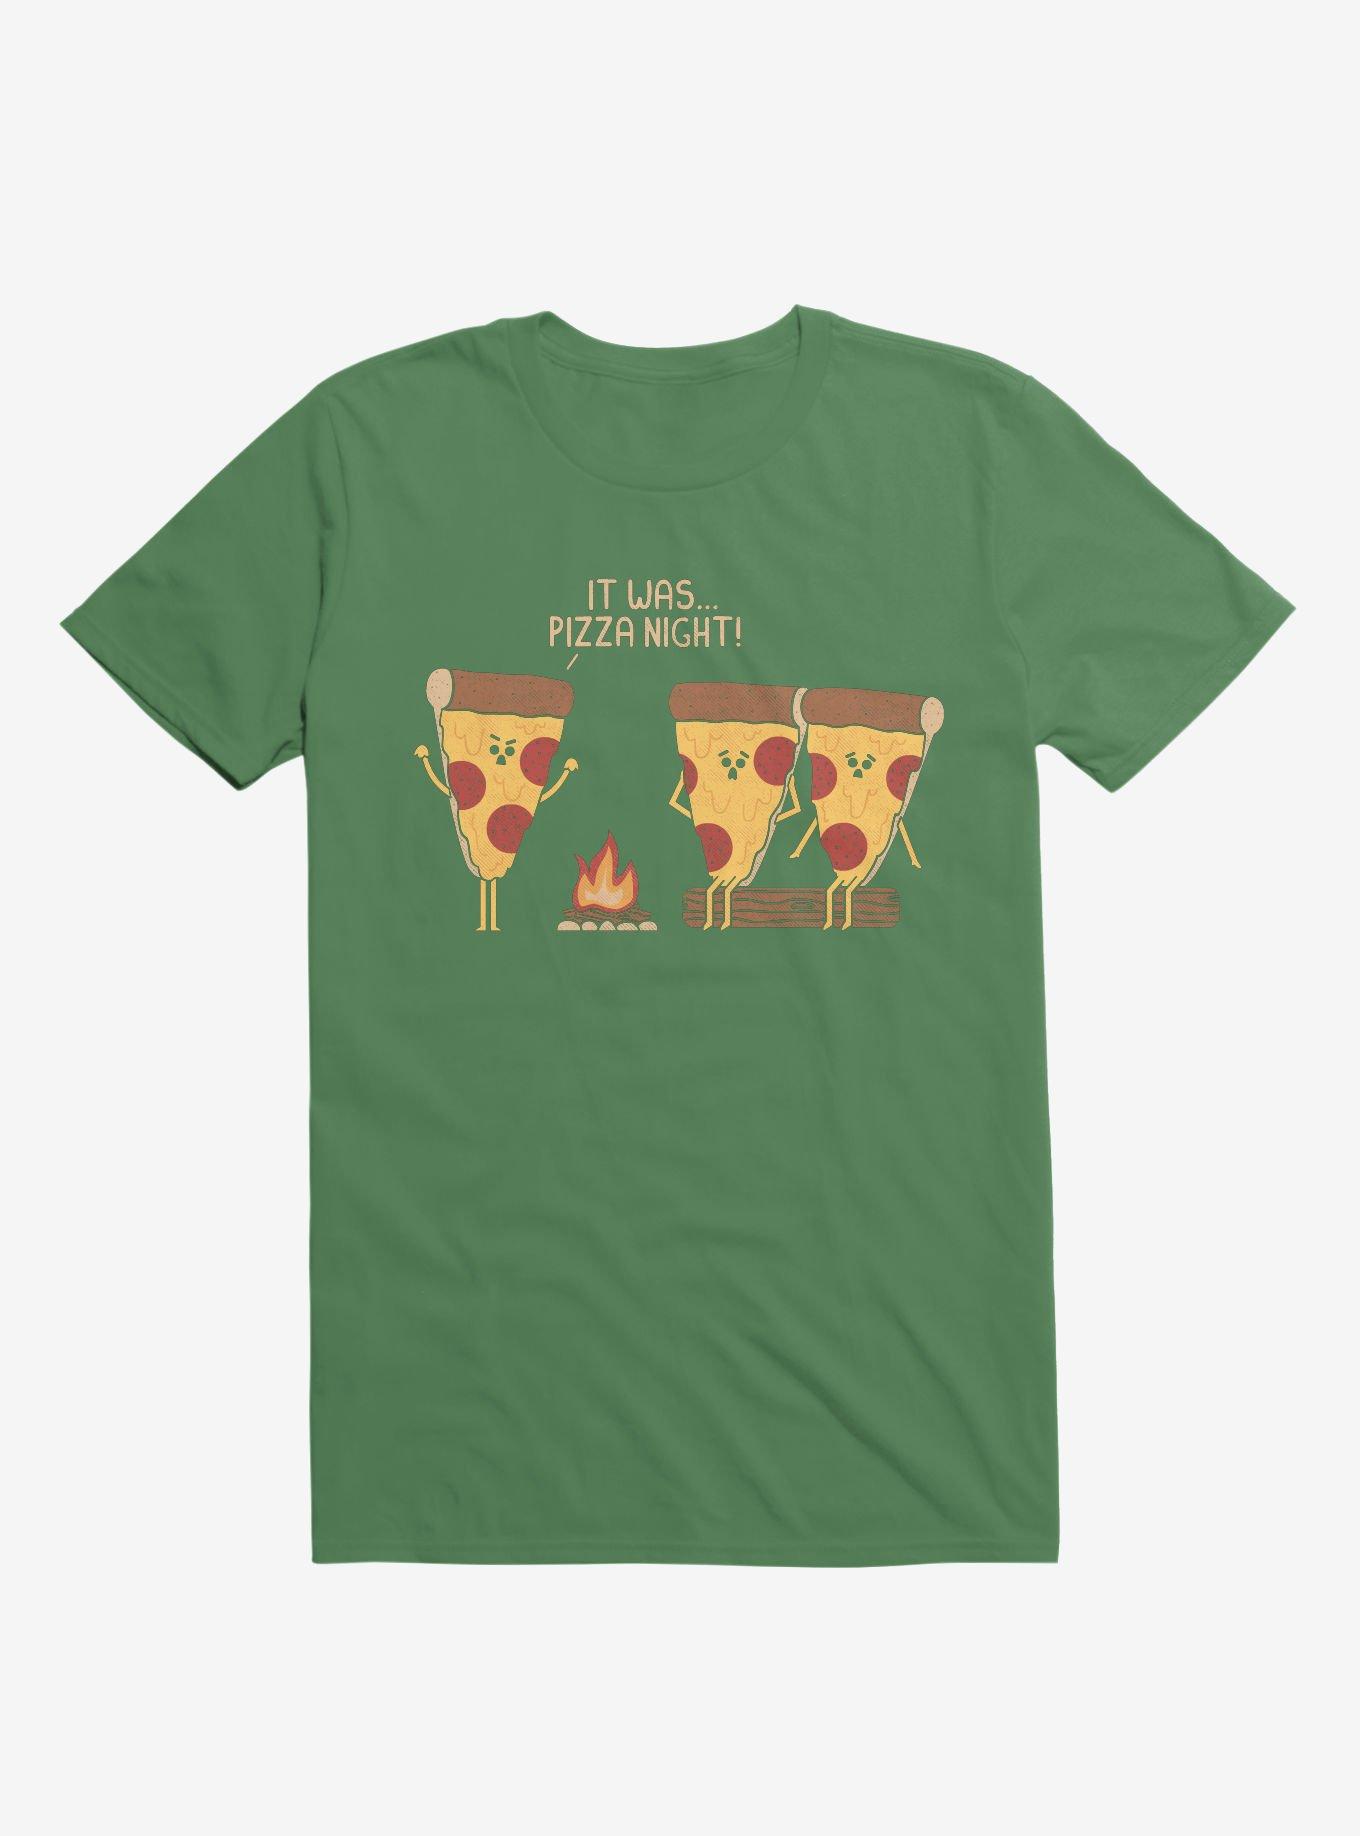 It Was... Pizza Night! Scary Story Irish Green T-Shirt